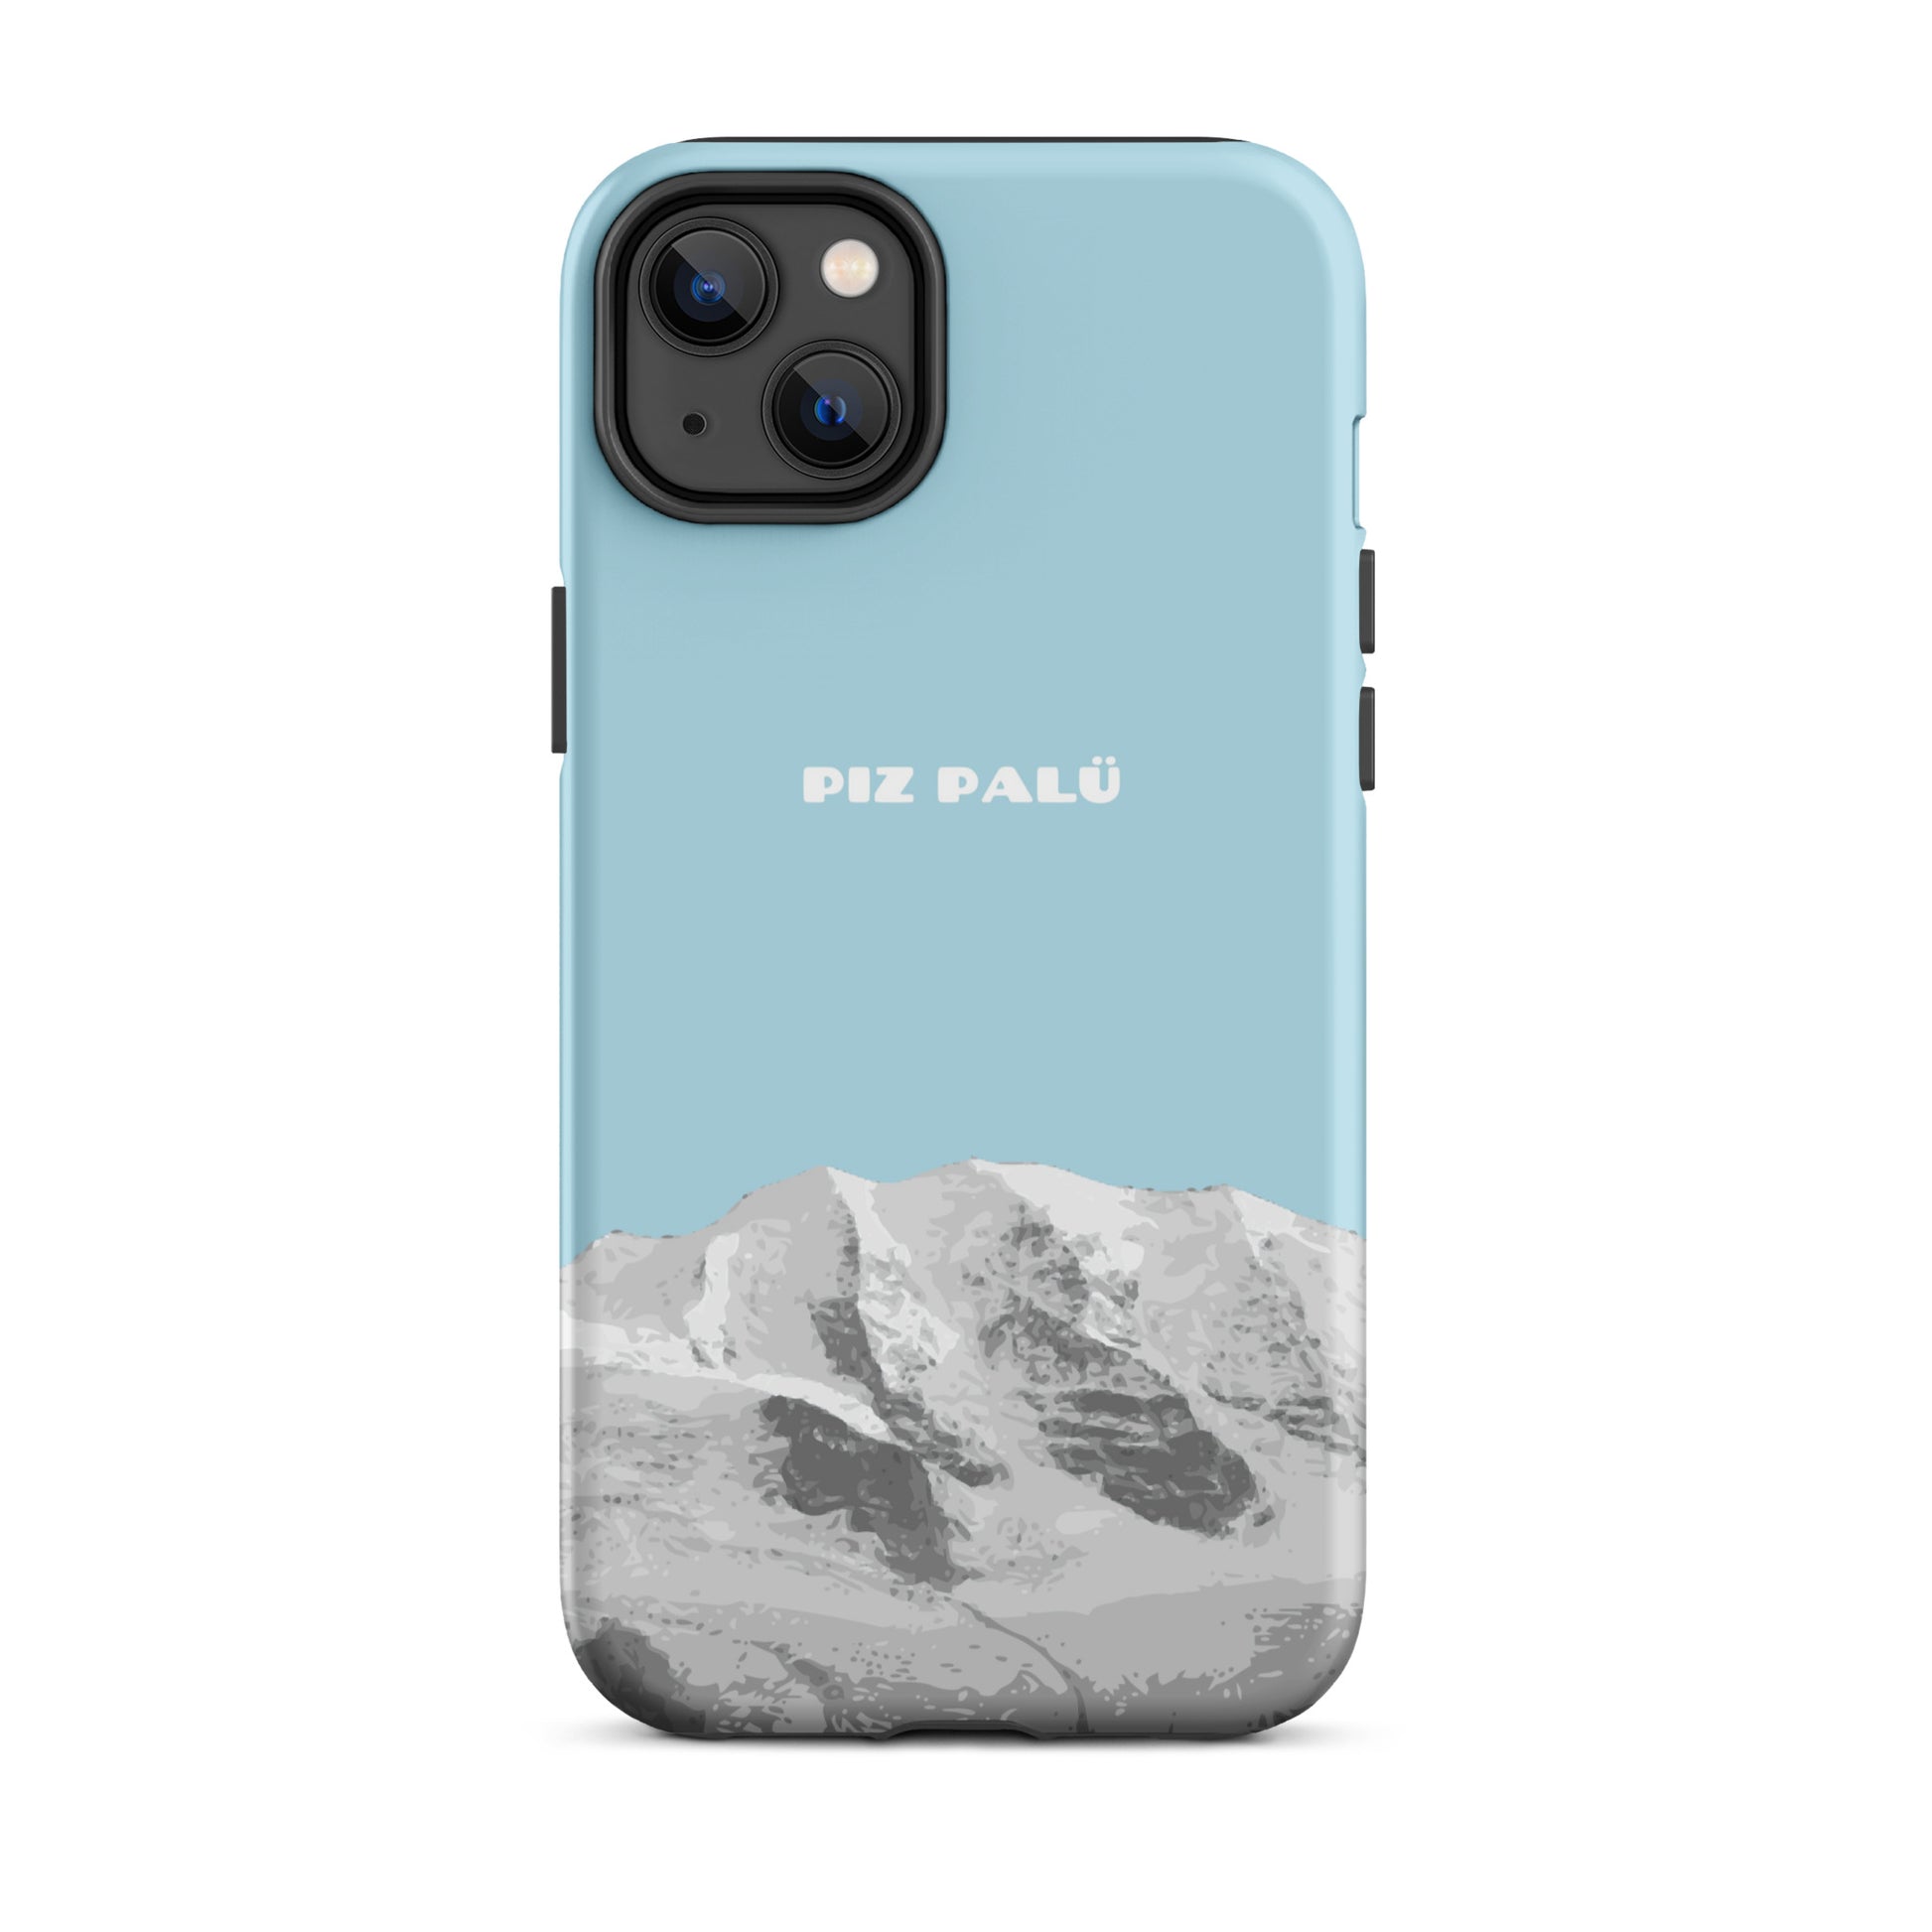 Hülle für das iPhone 14 Plus von Apple in der Farbe Hellblau, dass den Piz Palü in Graubünden zeigt.